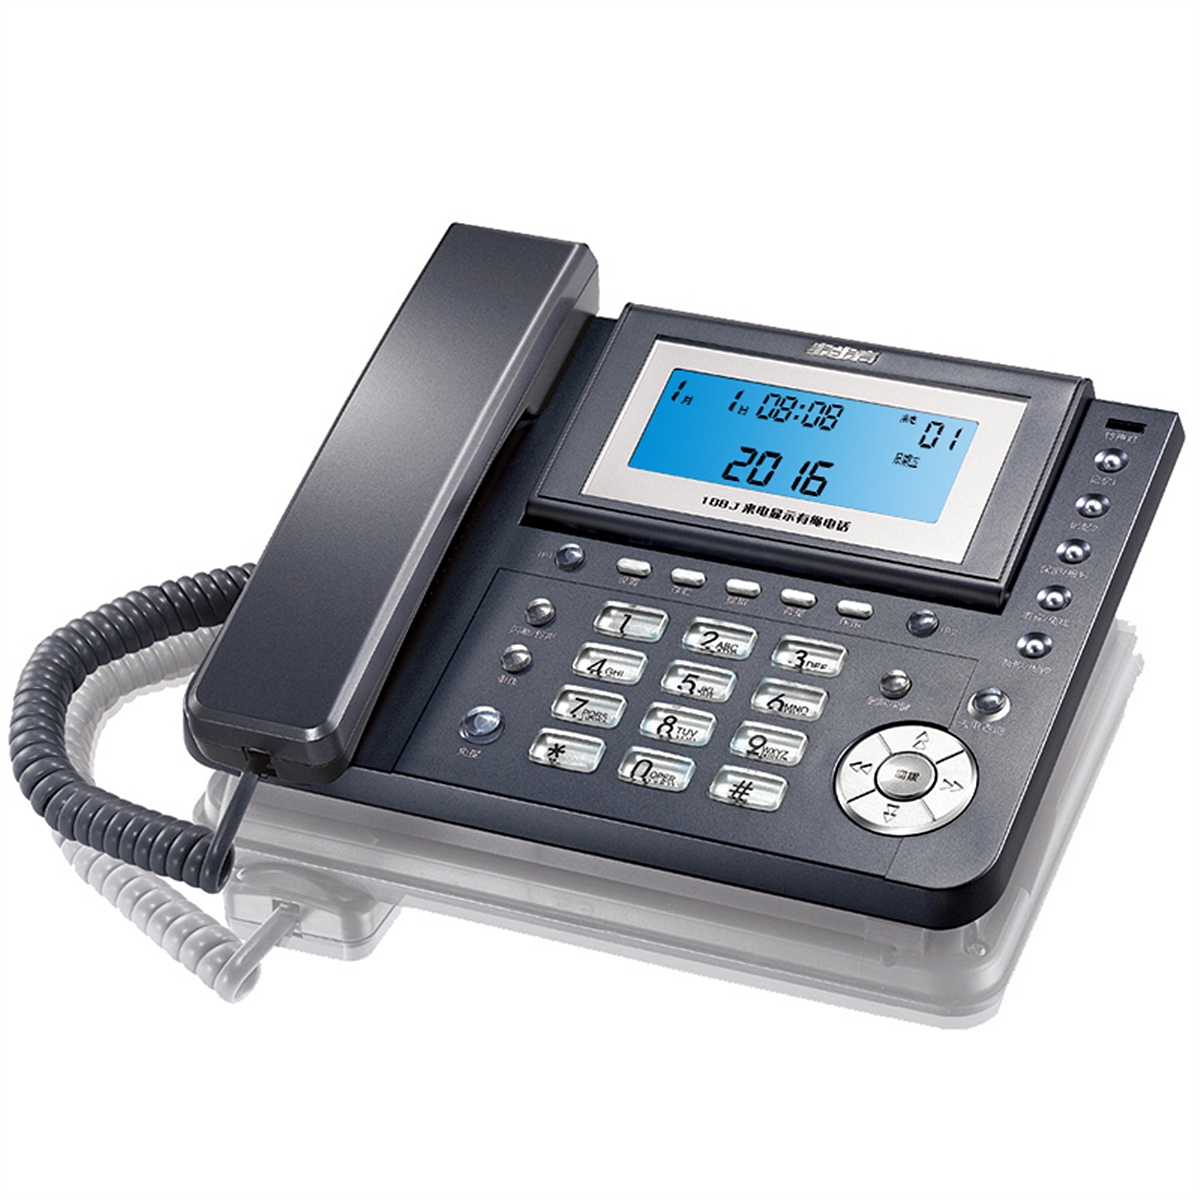 步步高HCD007(188)TSD电话机深灰色(部)